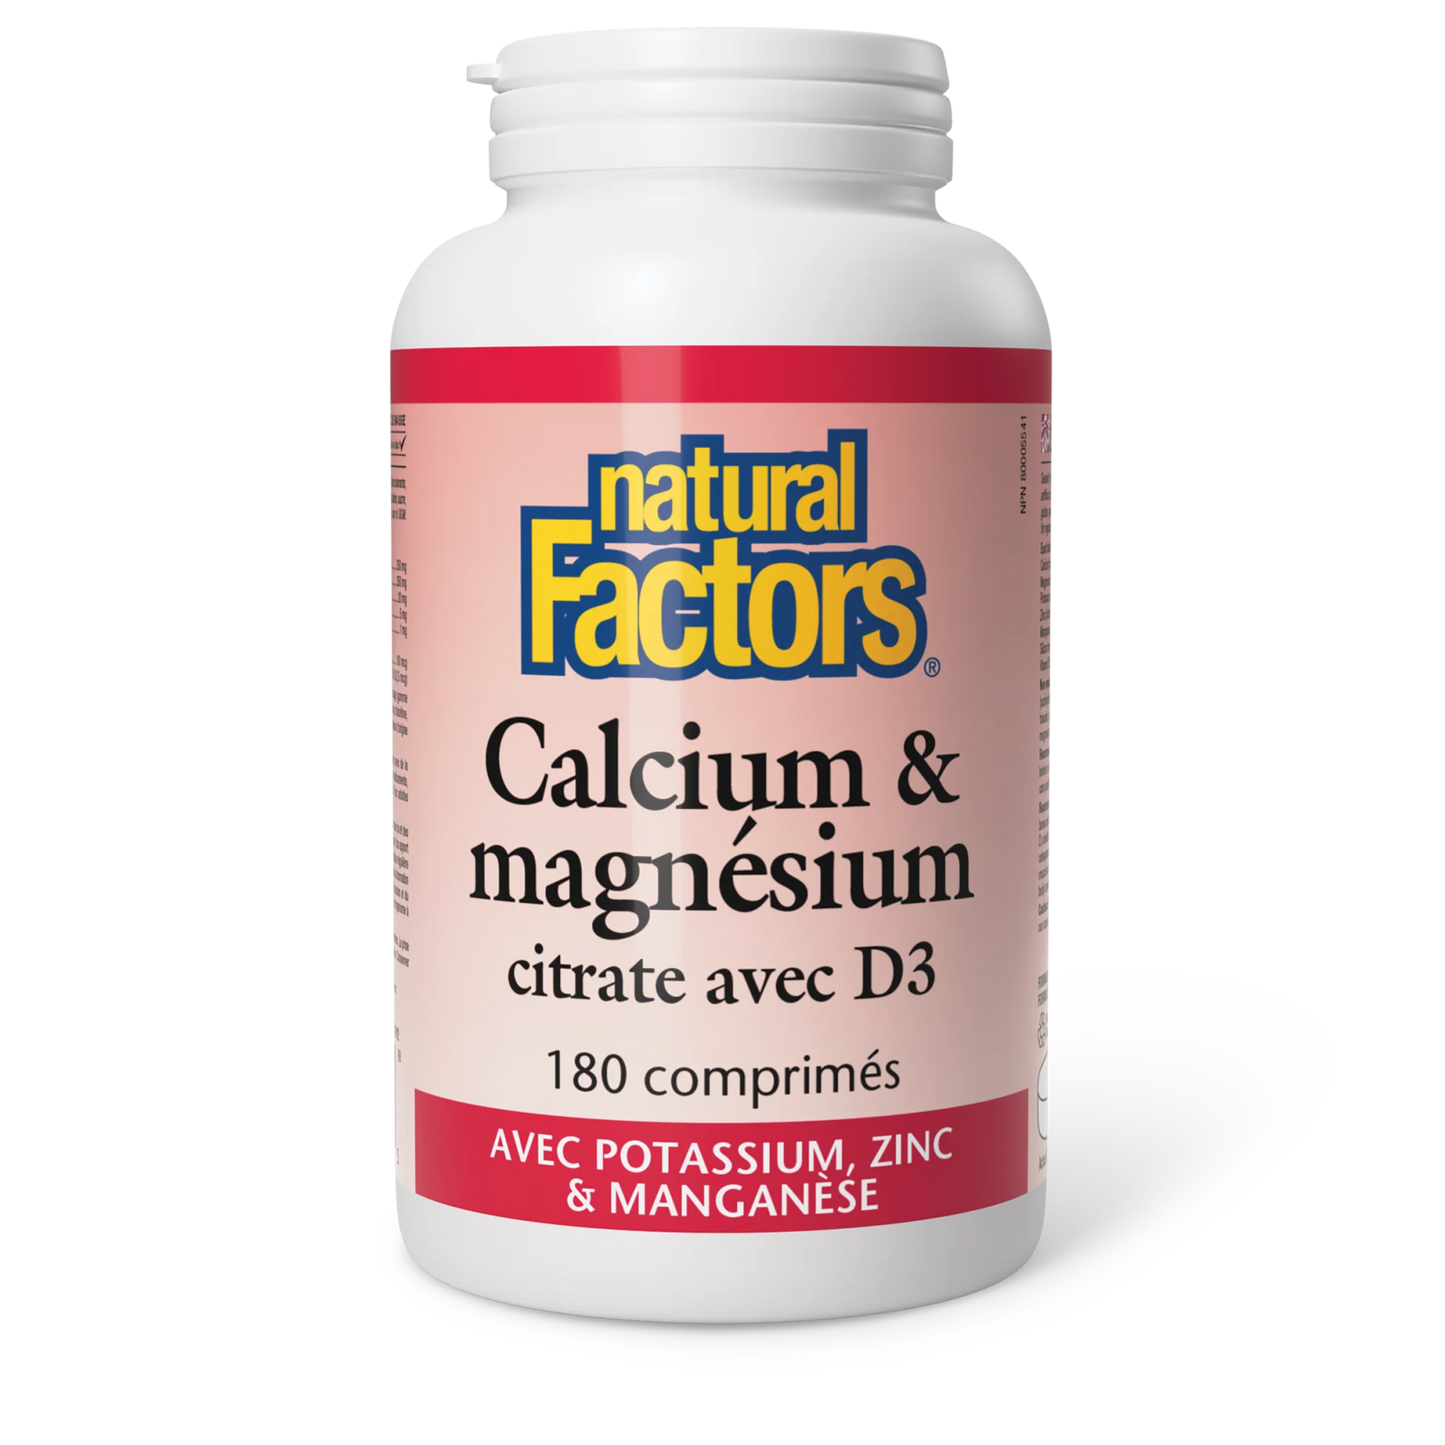 Calcium & magnésium citrate avec D3